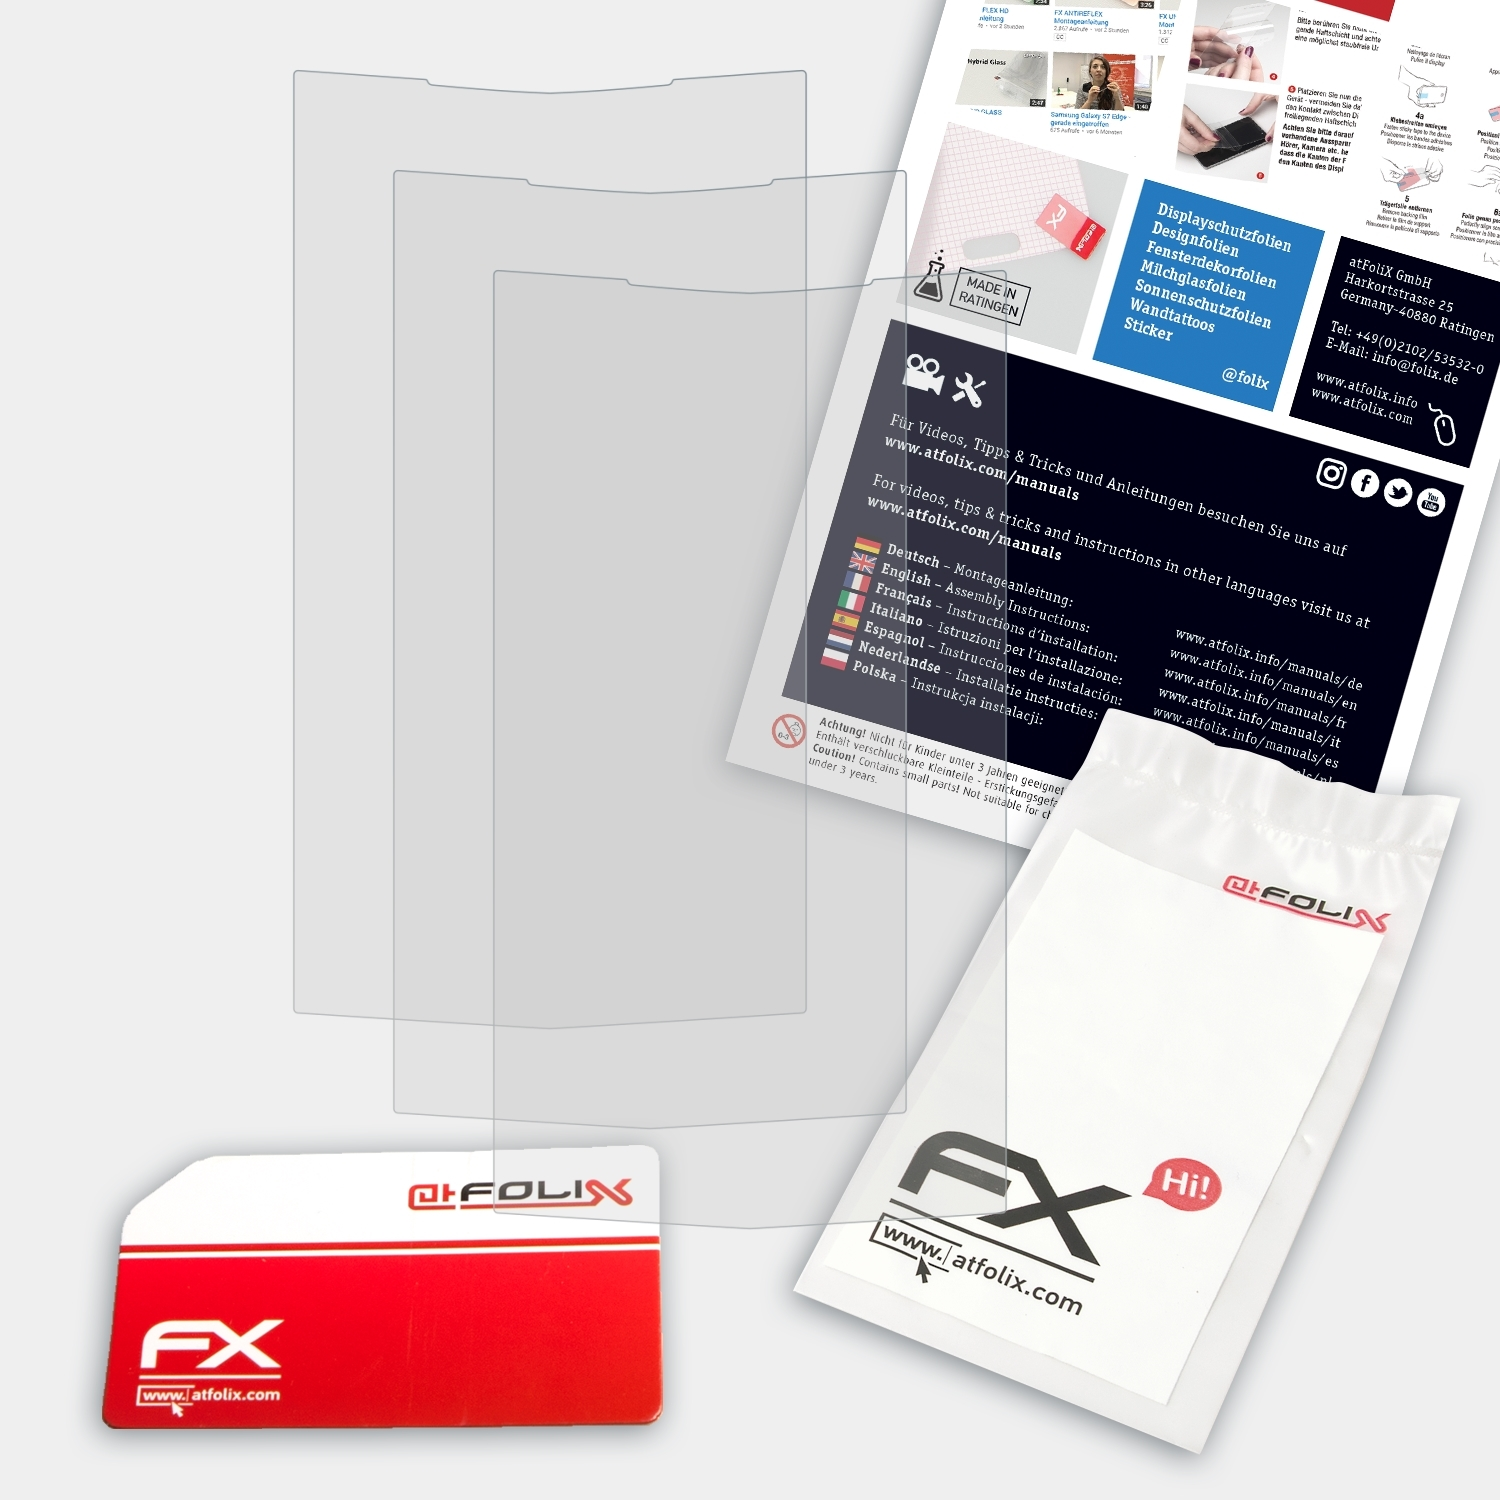 Vertu Touch) FX-Antireflex 3x Displayschutz(für ATFOLIX Signature